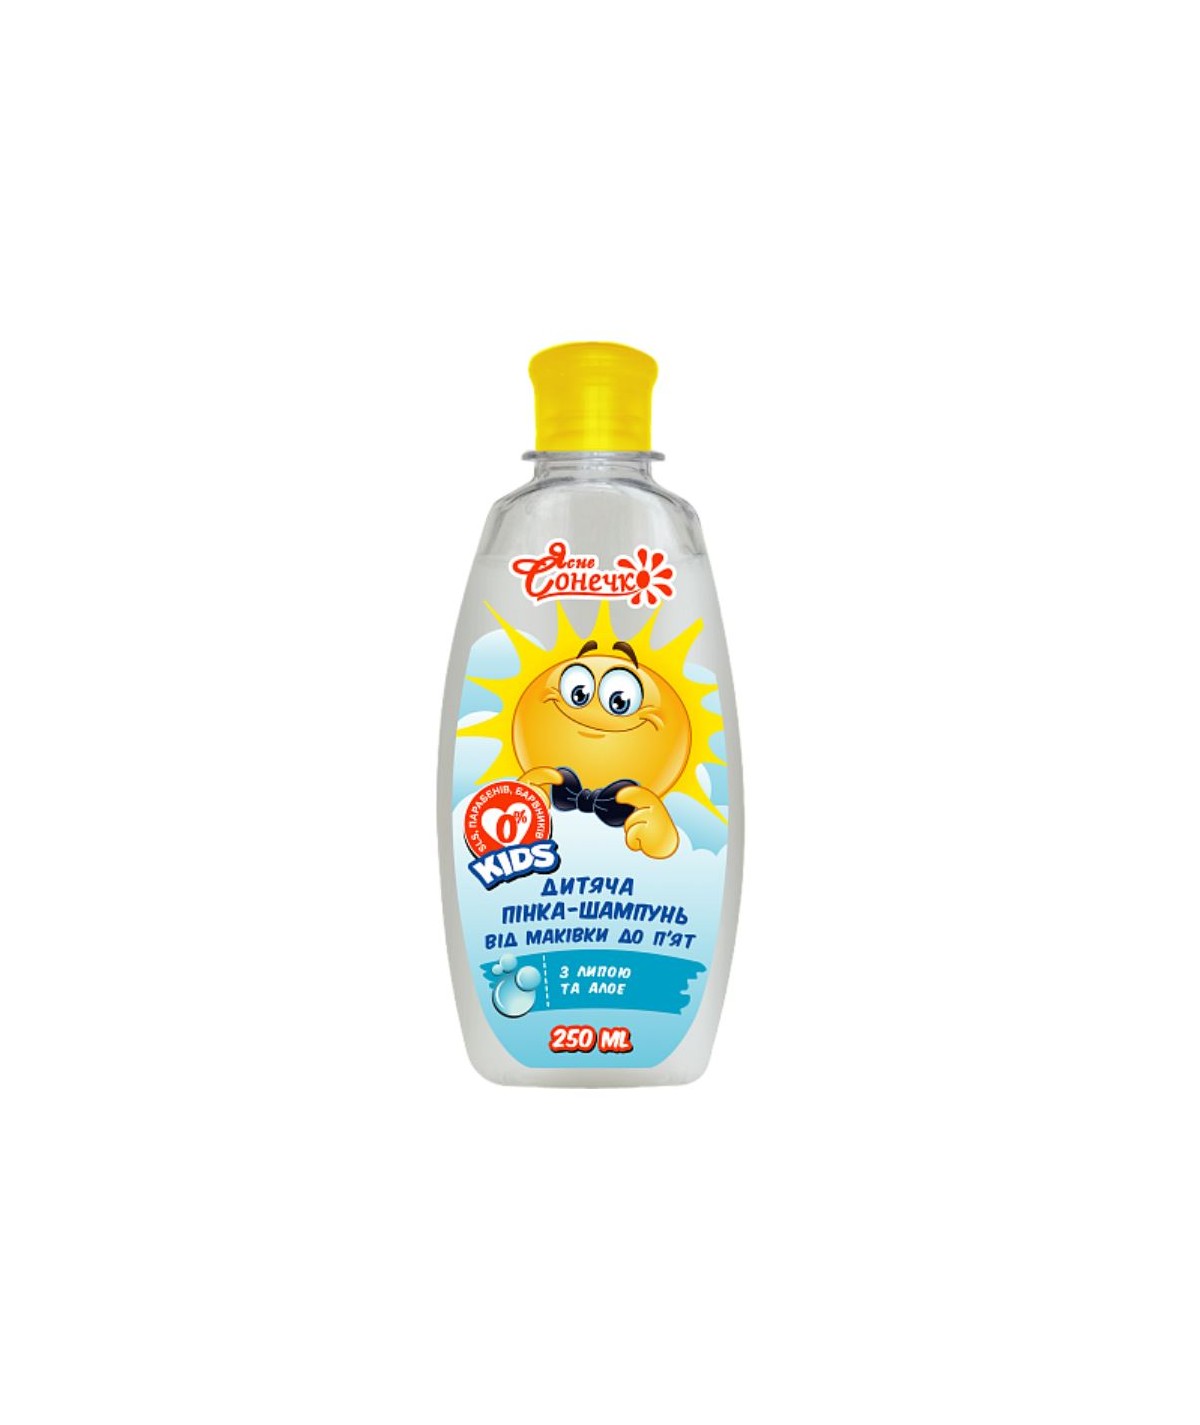 szampon dla dzieci ktory nie szczypiący w oczy